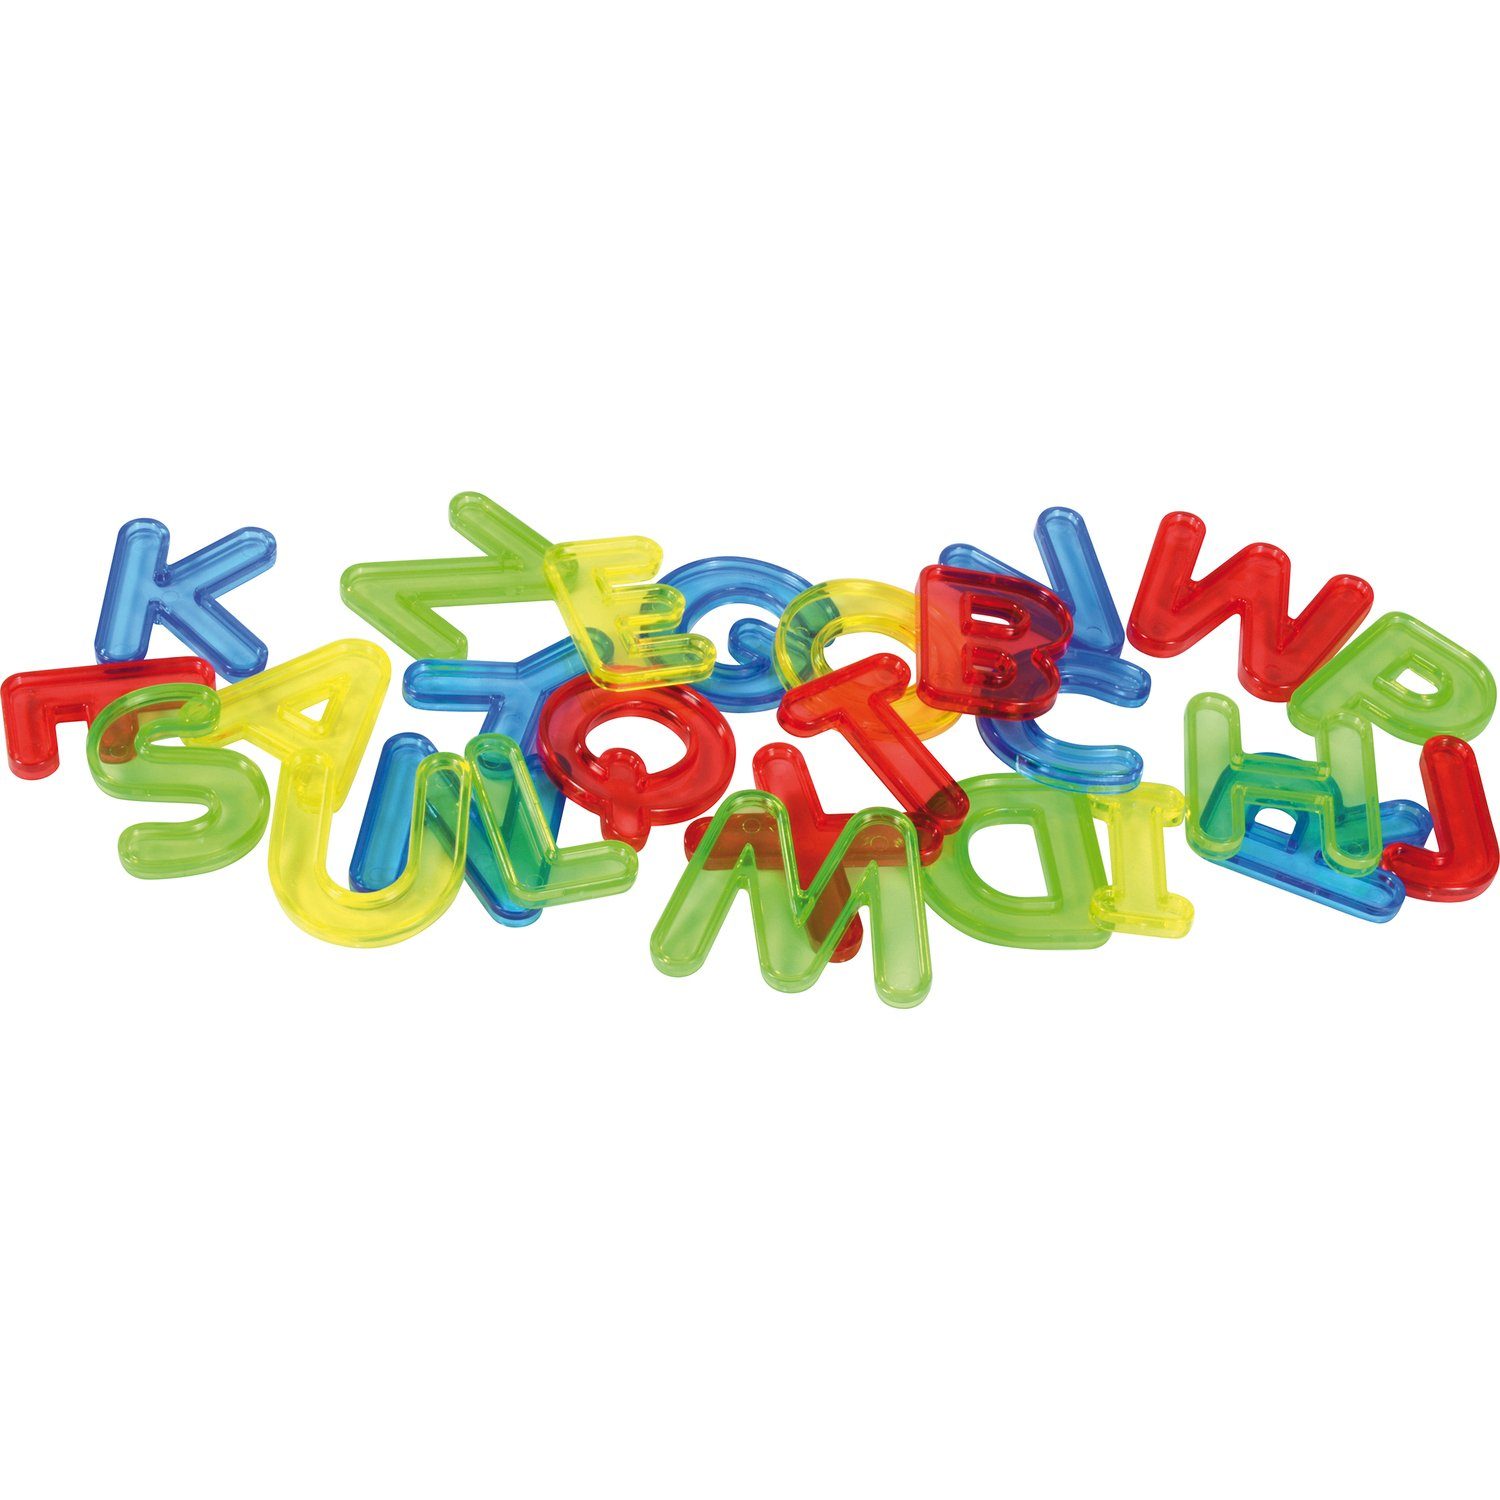 Lernspielzeug EDUPLAY Transparente Buchstaben